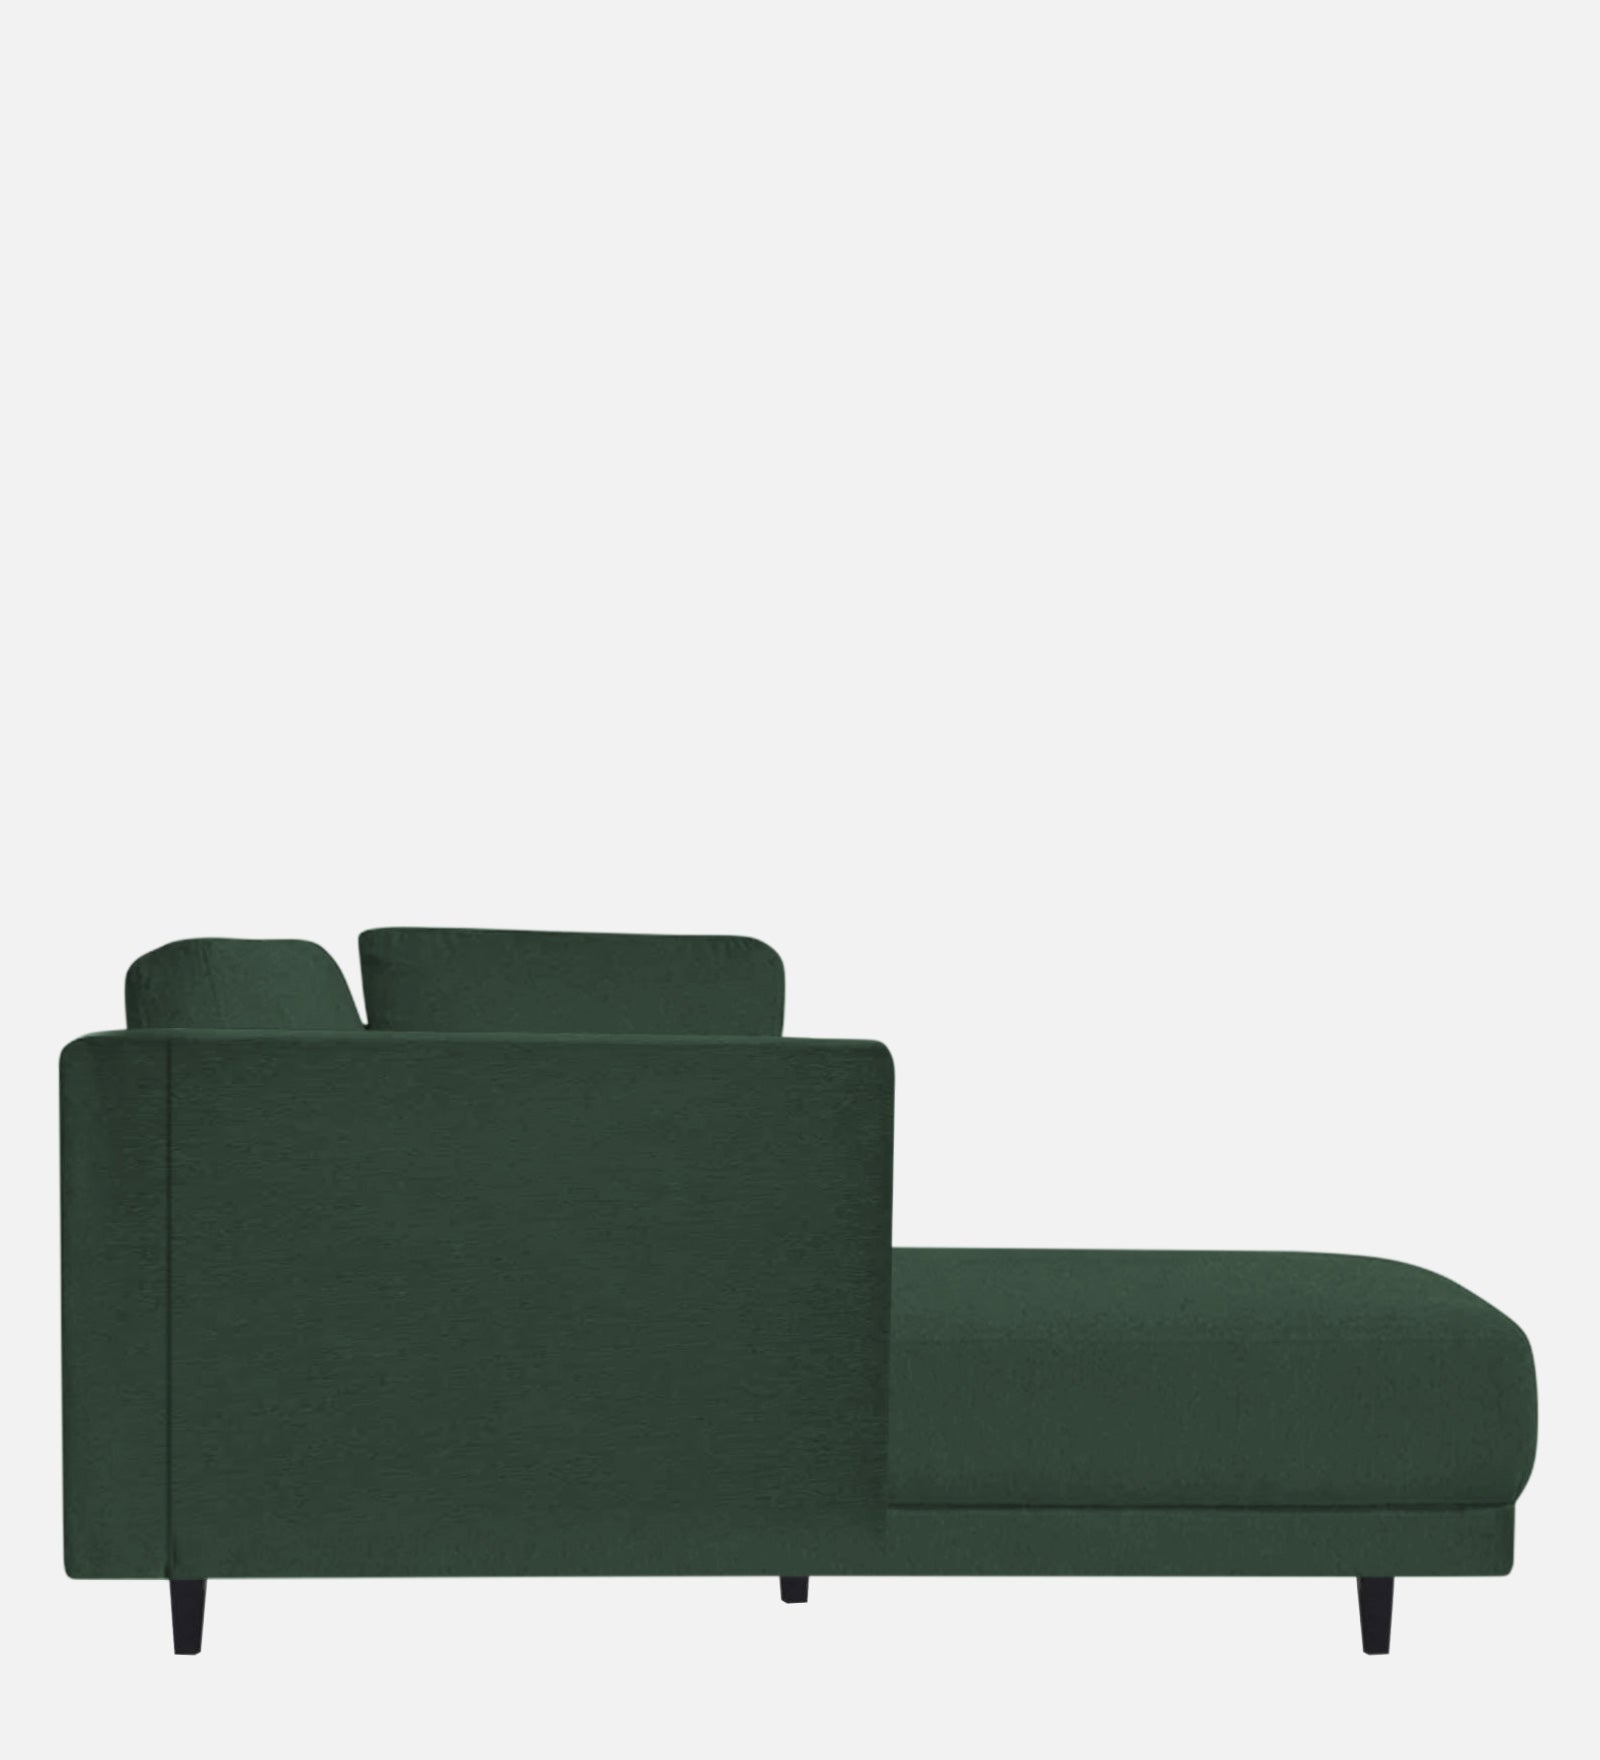 Jonze Velvet LHS Chaise Lounger in Amazon Green Colour